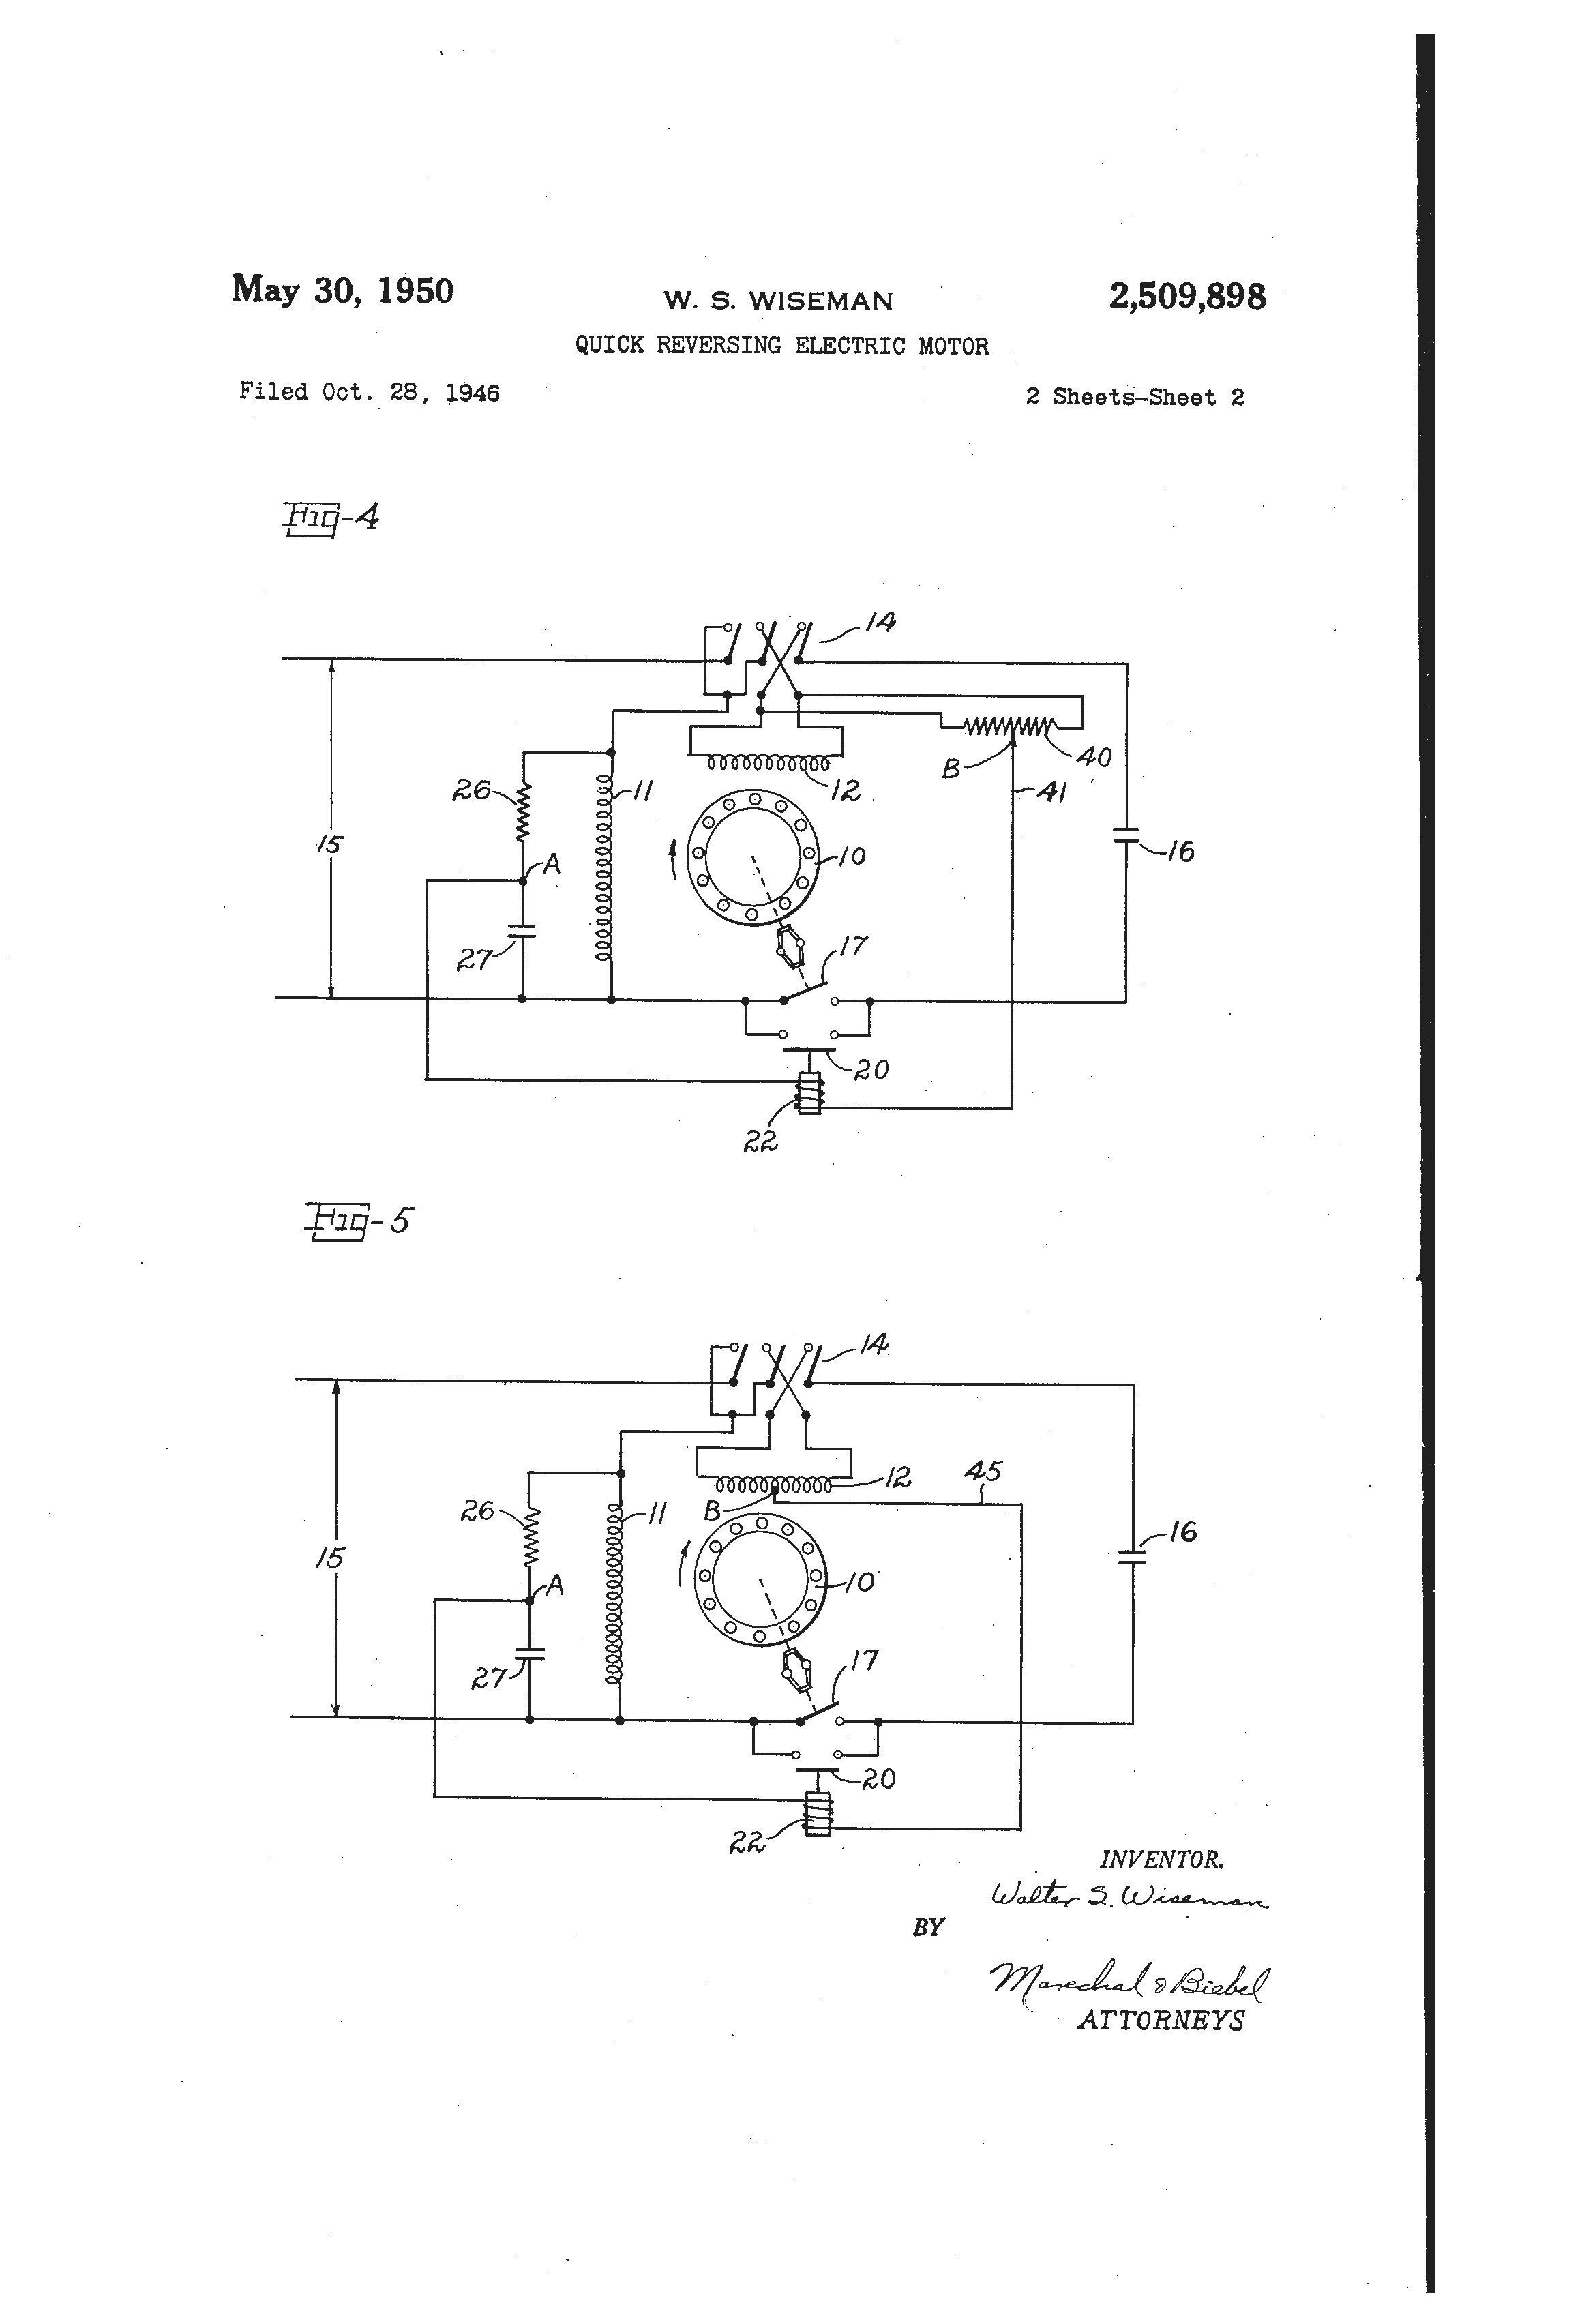 Motor Heater Wiring Diagram Save Baldor Motor Heater Wiring Diagram Wiring Diagram